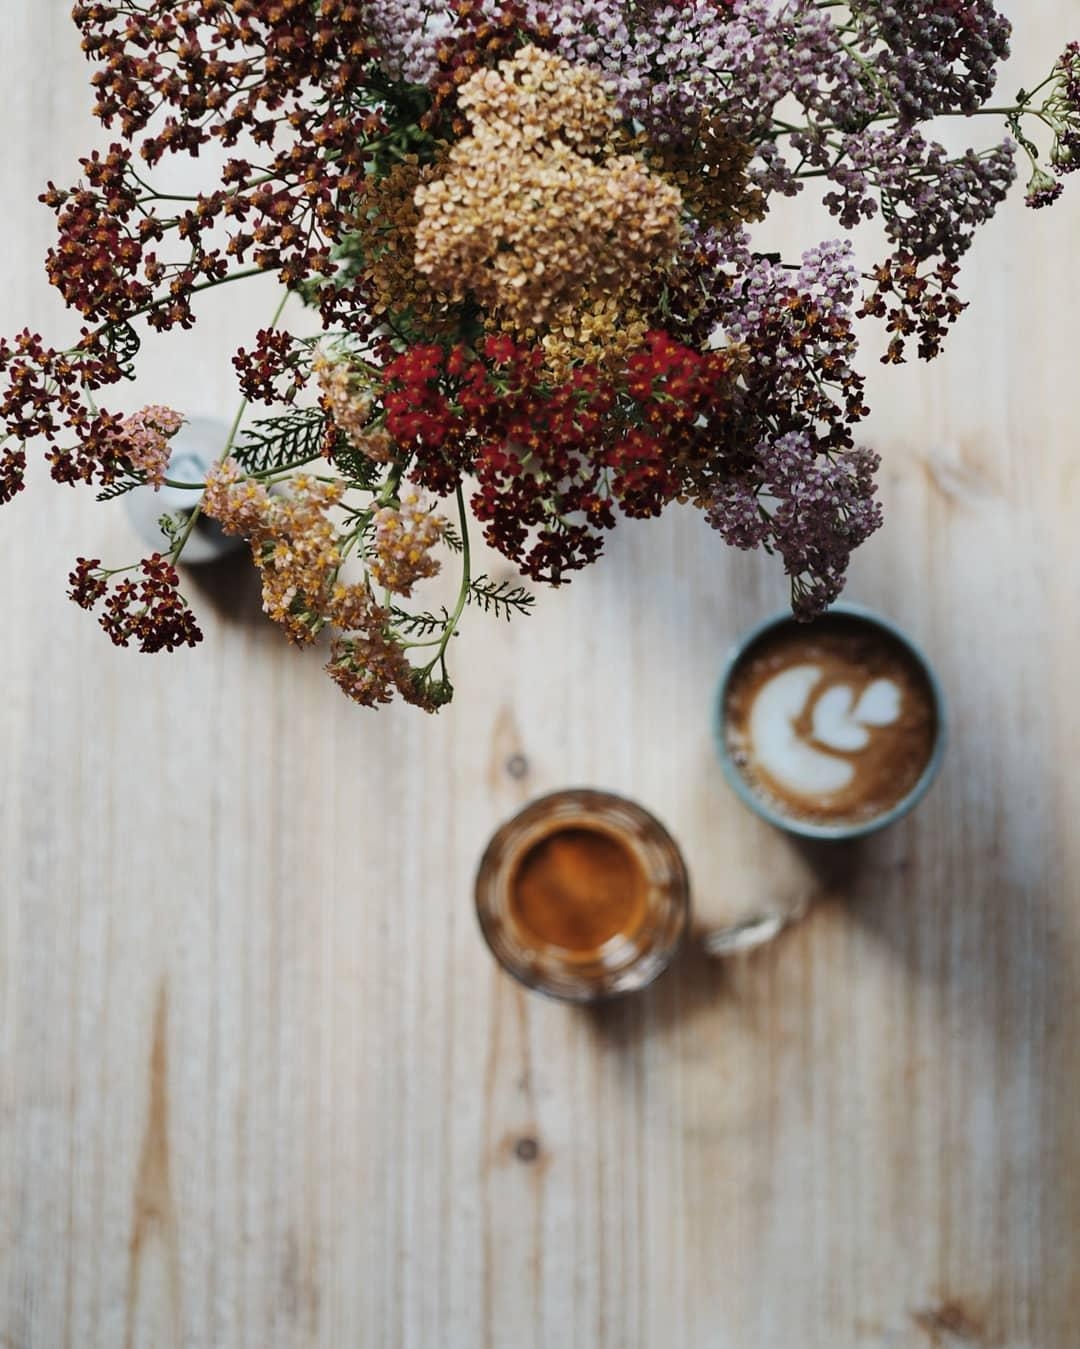 Das Leben ist zu kurz für schlechten Kaffee. 

#coffee #kaffee #hygge #zuhause #flowers #sunday #gemütlich 